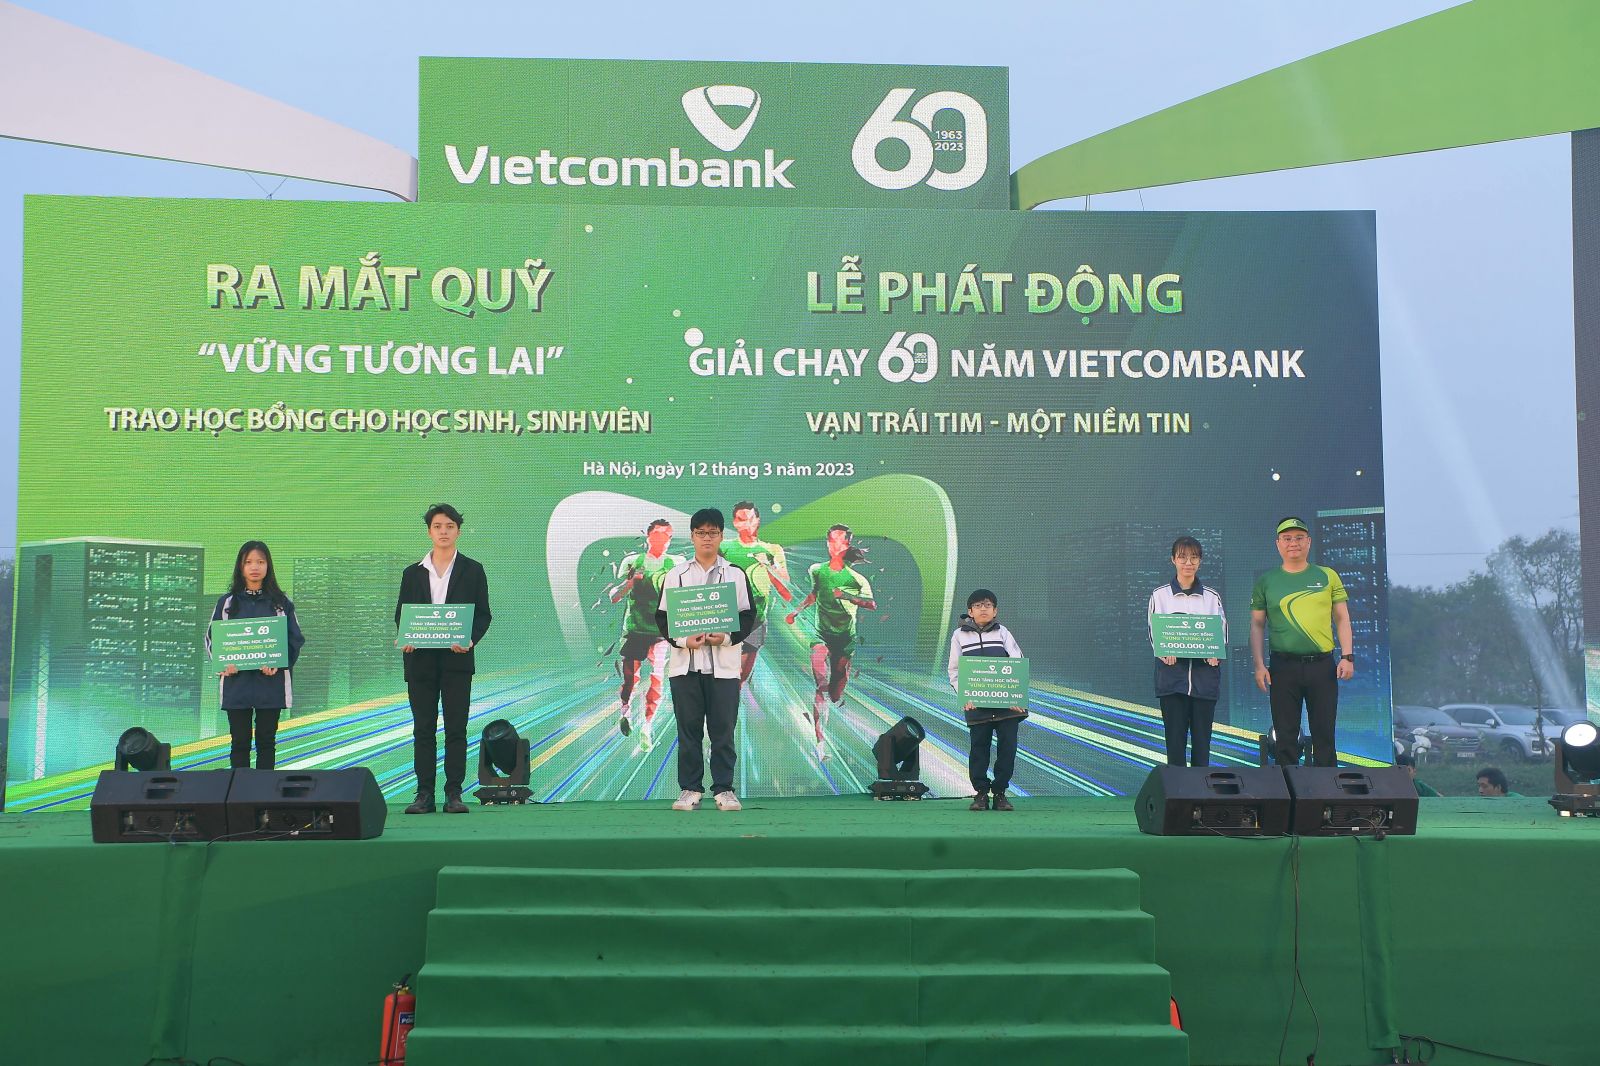 Nhân dịp kỷ niệm 60 năm thành lập, Vietcombank đã ra mắt Quỹ “Vững tương lai”, hỗ trợ học sinh, sinh viên nghèo vượt khó, tài năng